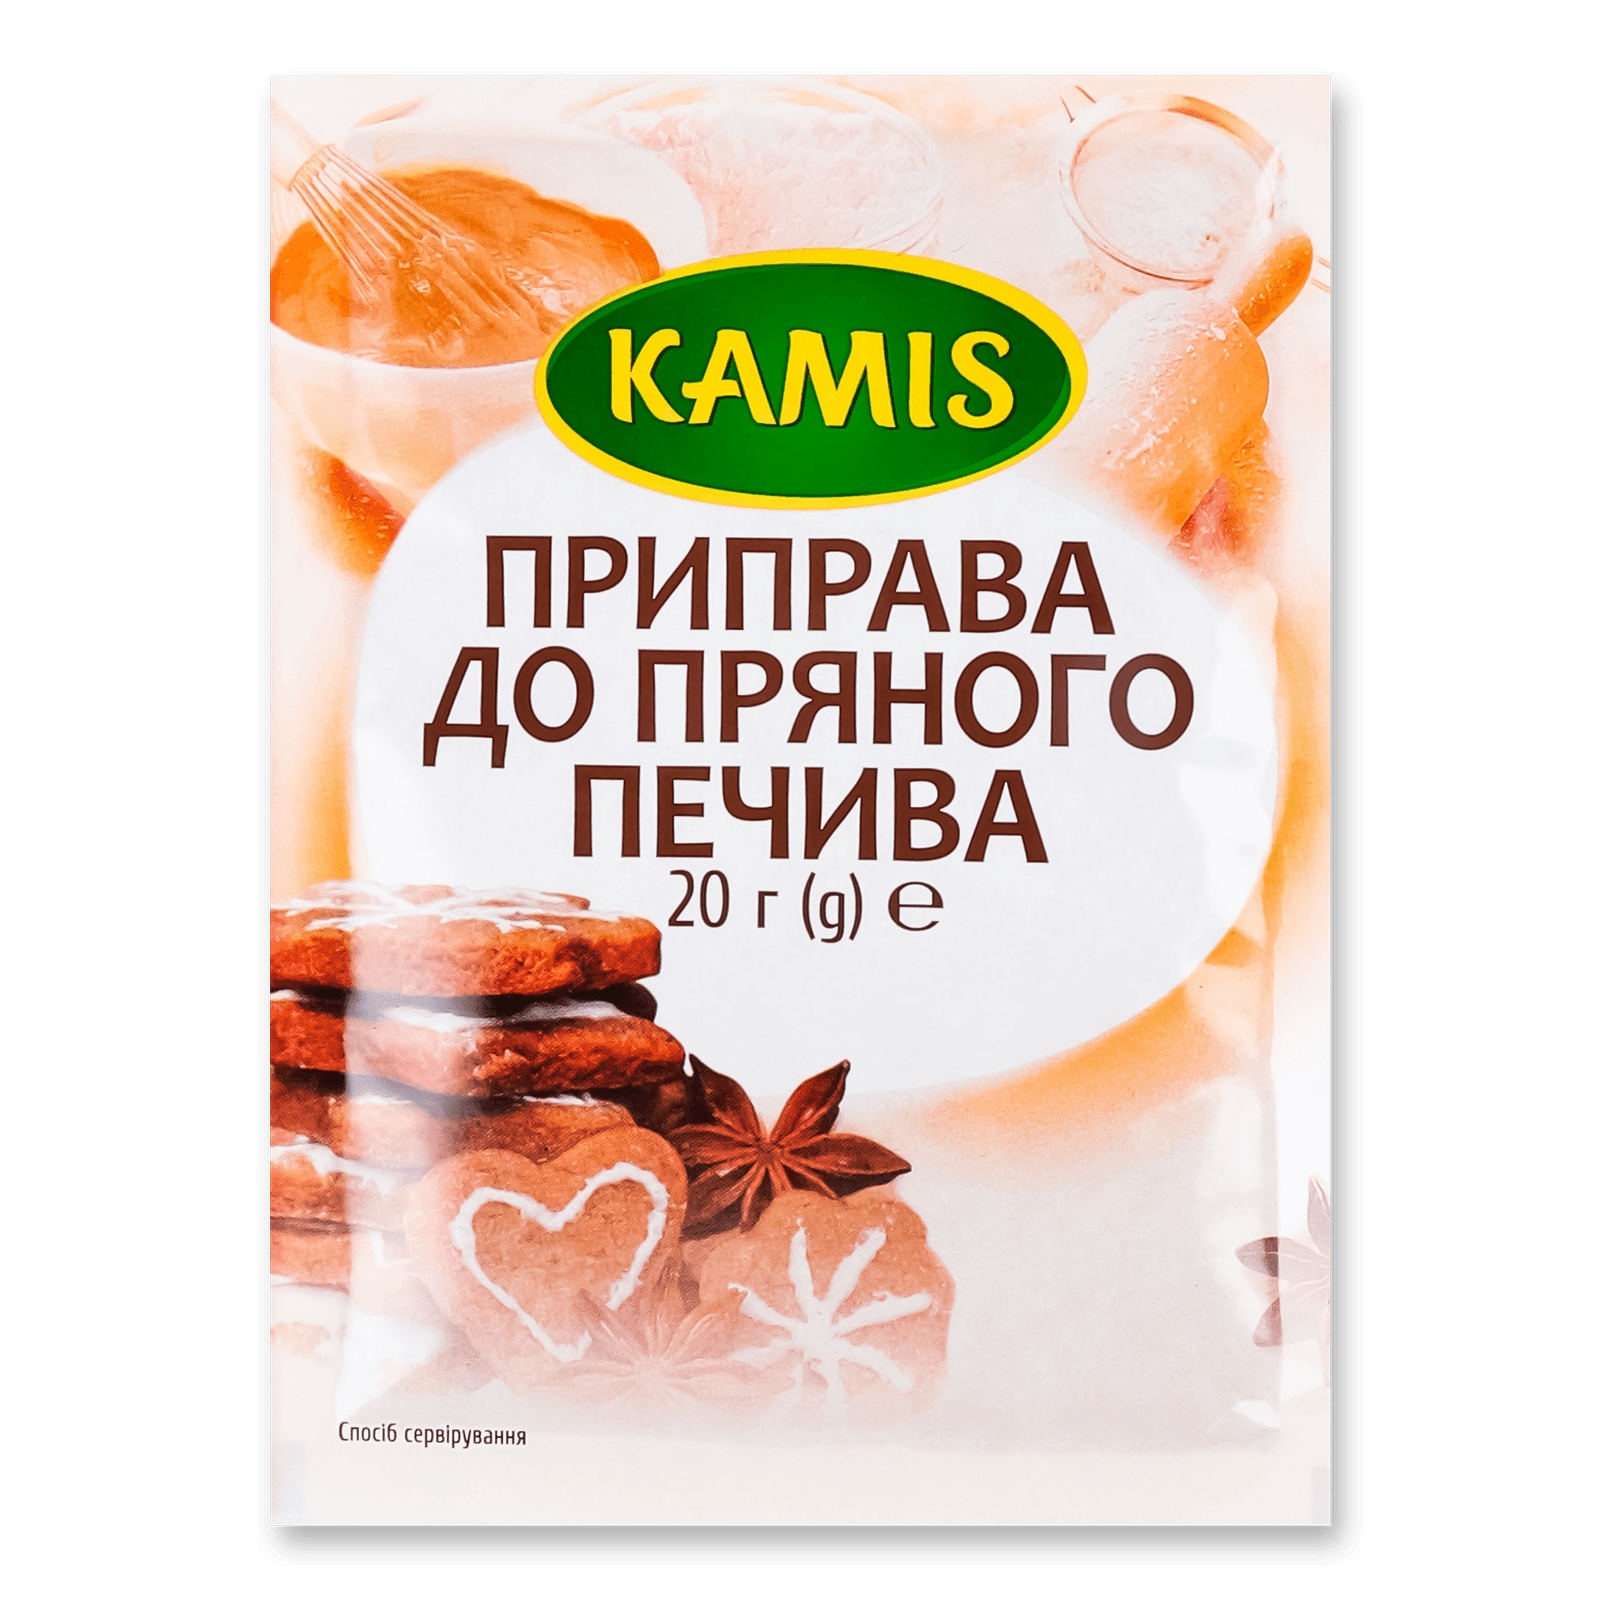 Суміш Кamis для пряного печива - 1